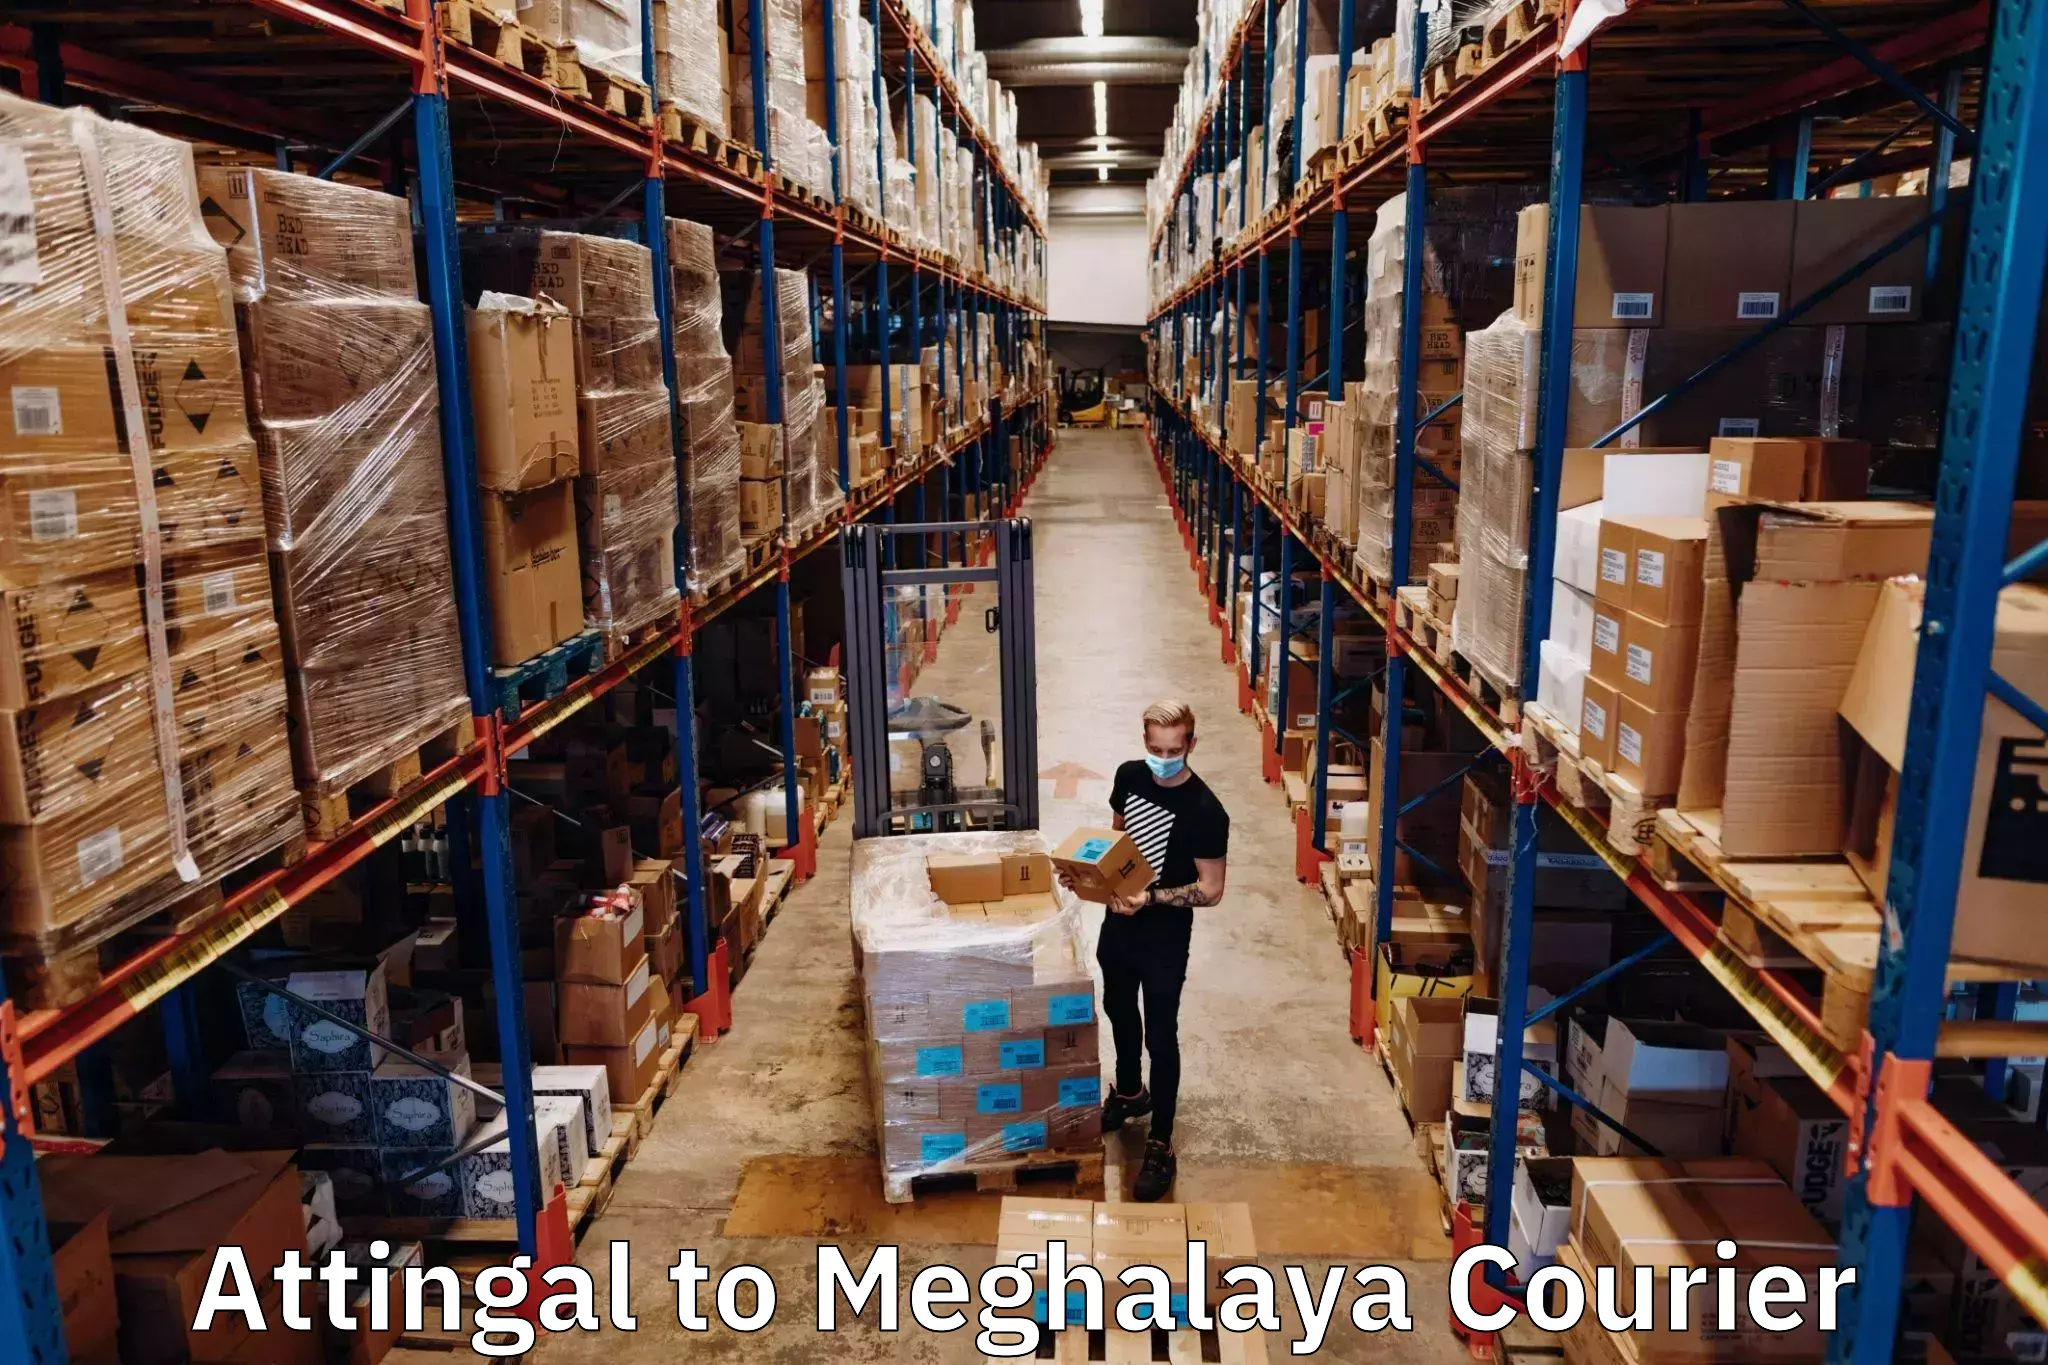 Seamless shipping service Attingal to Meghalaya